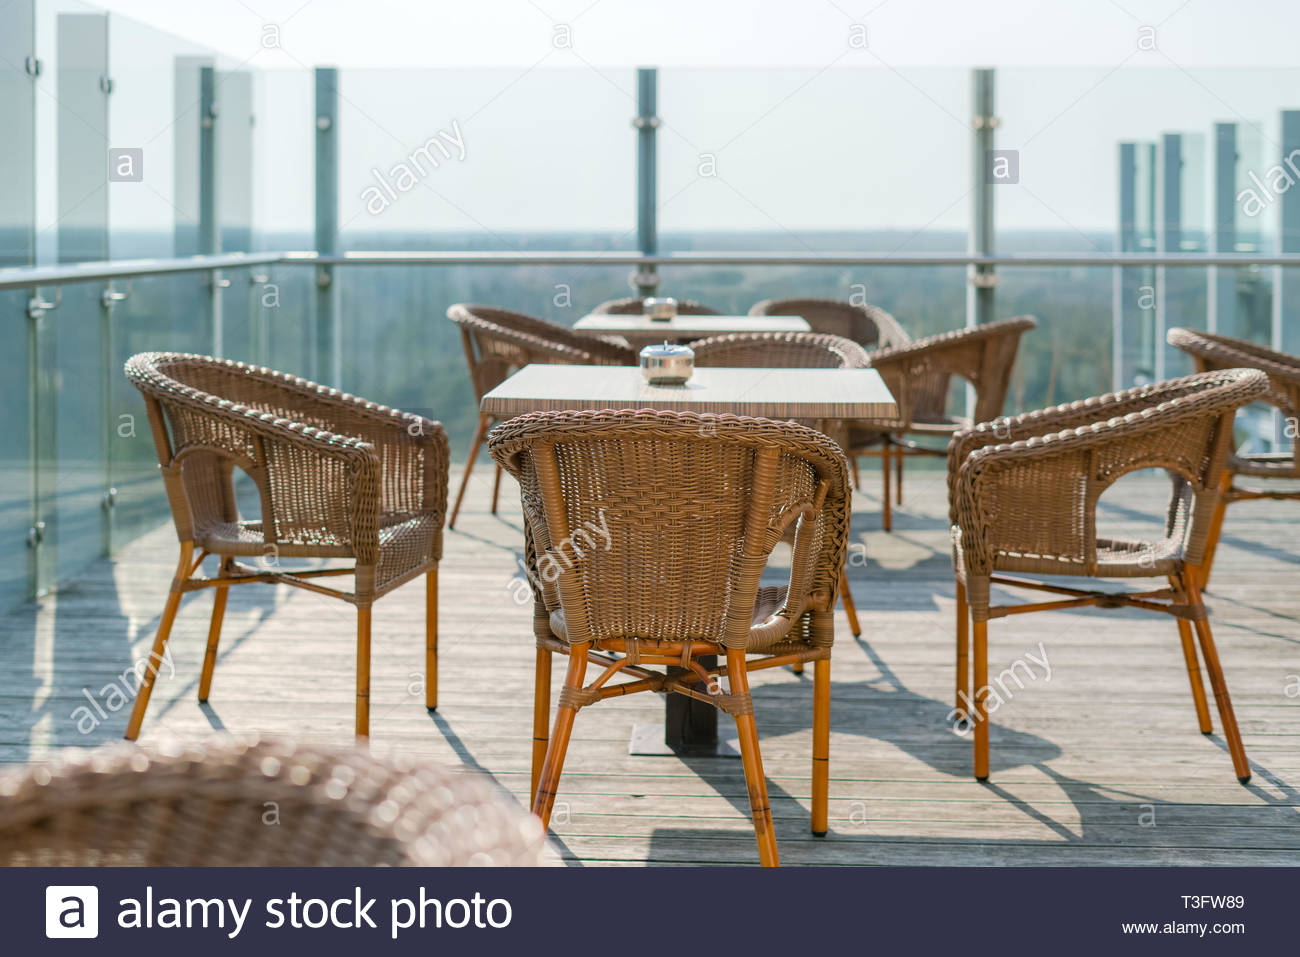 cafe vide avec des fauteuils en osier et en rotin tables sur jardin d ete terrasse exterieur l espace libre table et chaises de cafe vide meubles en rotin t3fw89